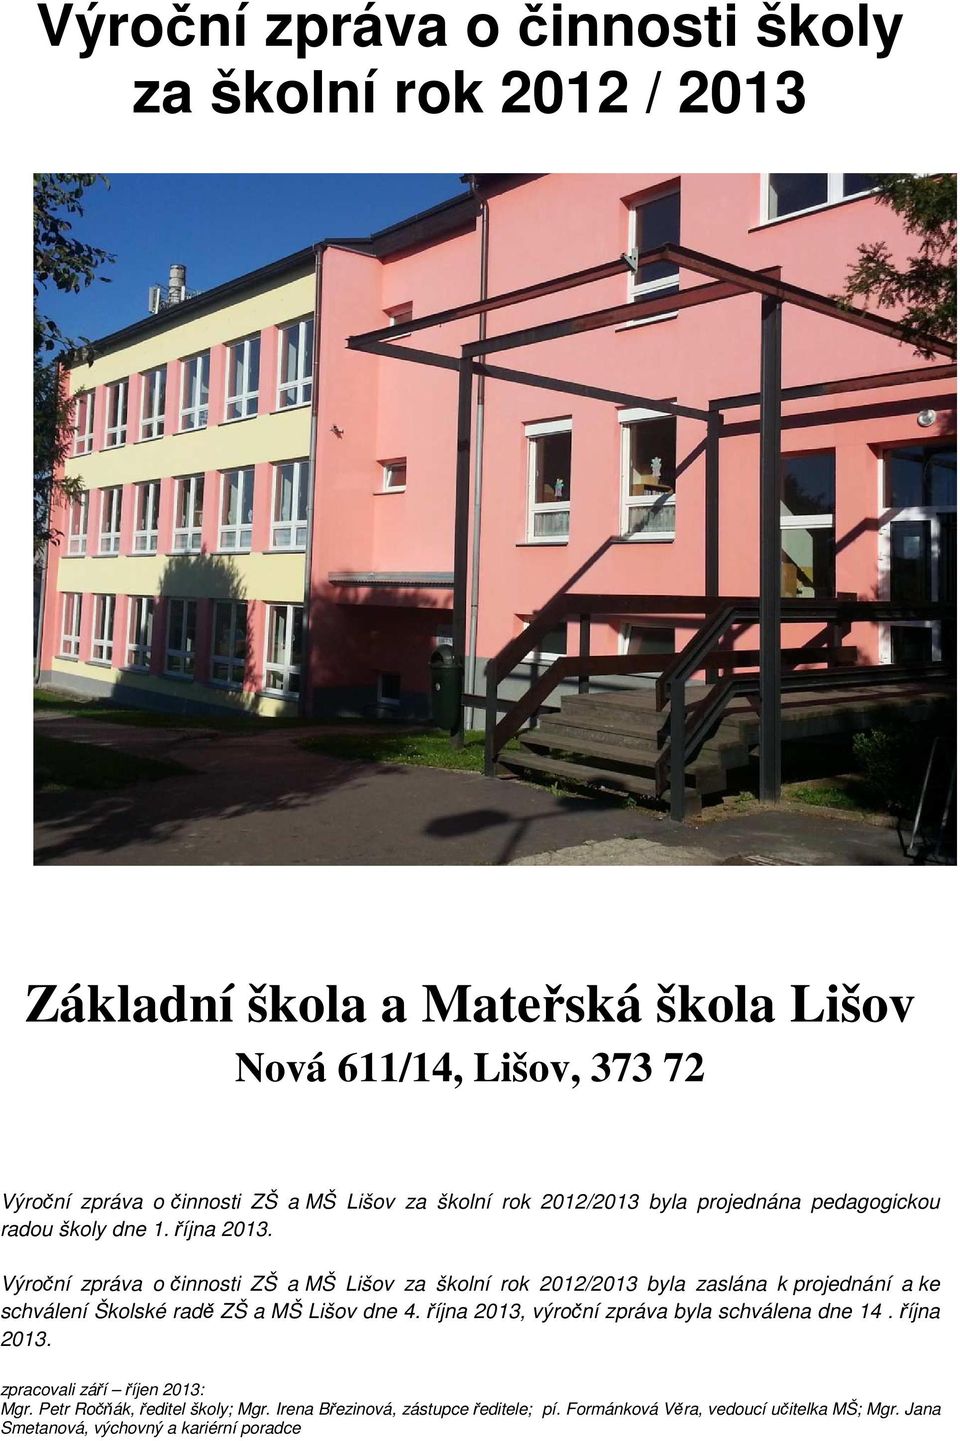 Výroční zpráva o činnosti ZŠ a MŠ Lišov za školní rok 2012/2013 byla zaslána k projednání a ke schválení Školské radě ZŠ a MŠ Lišov dne 4.